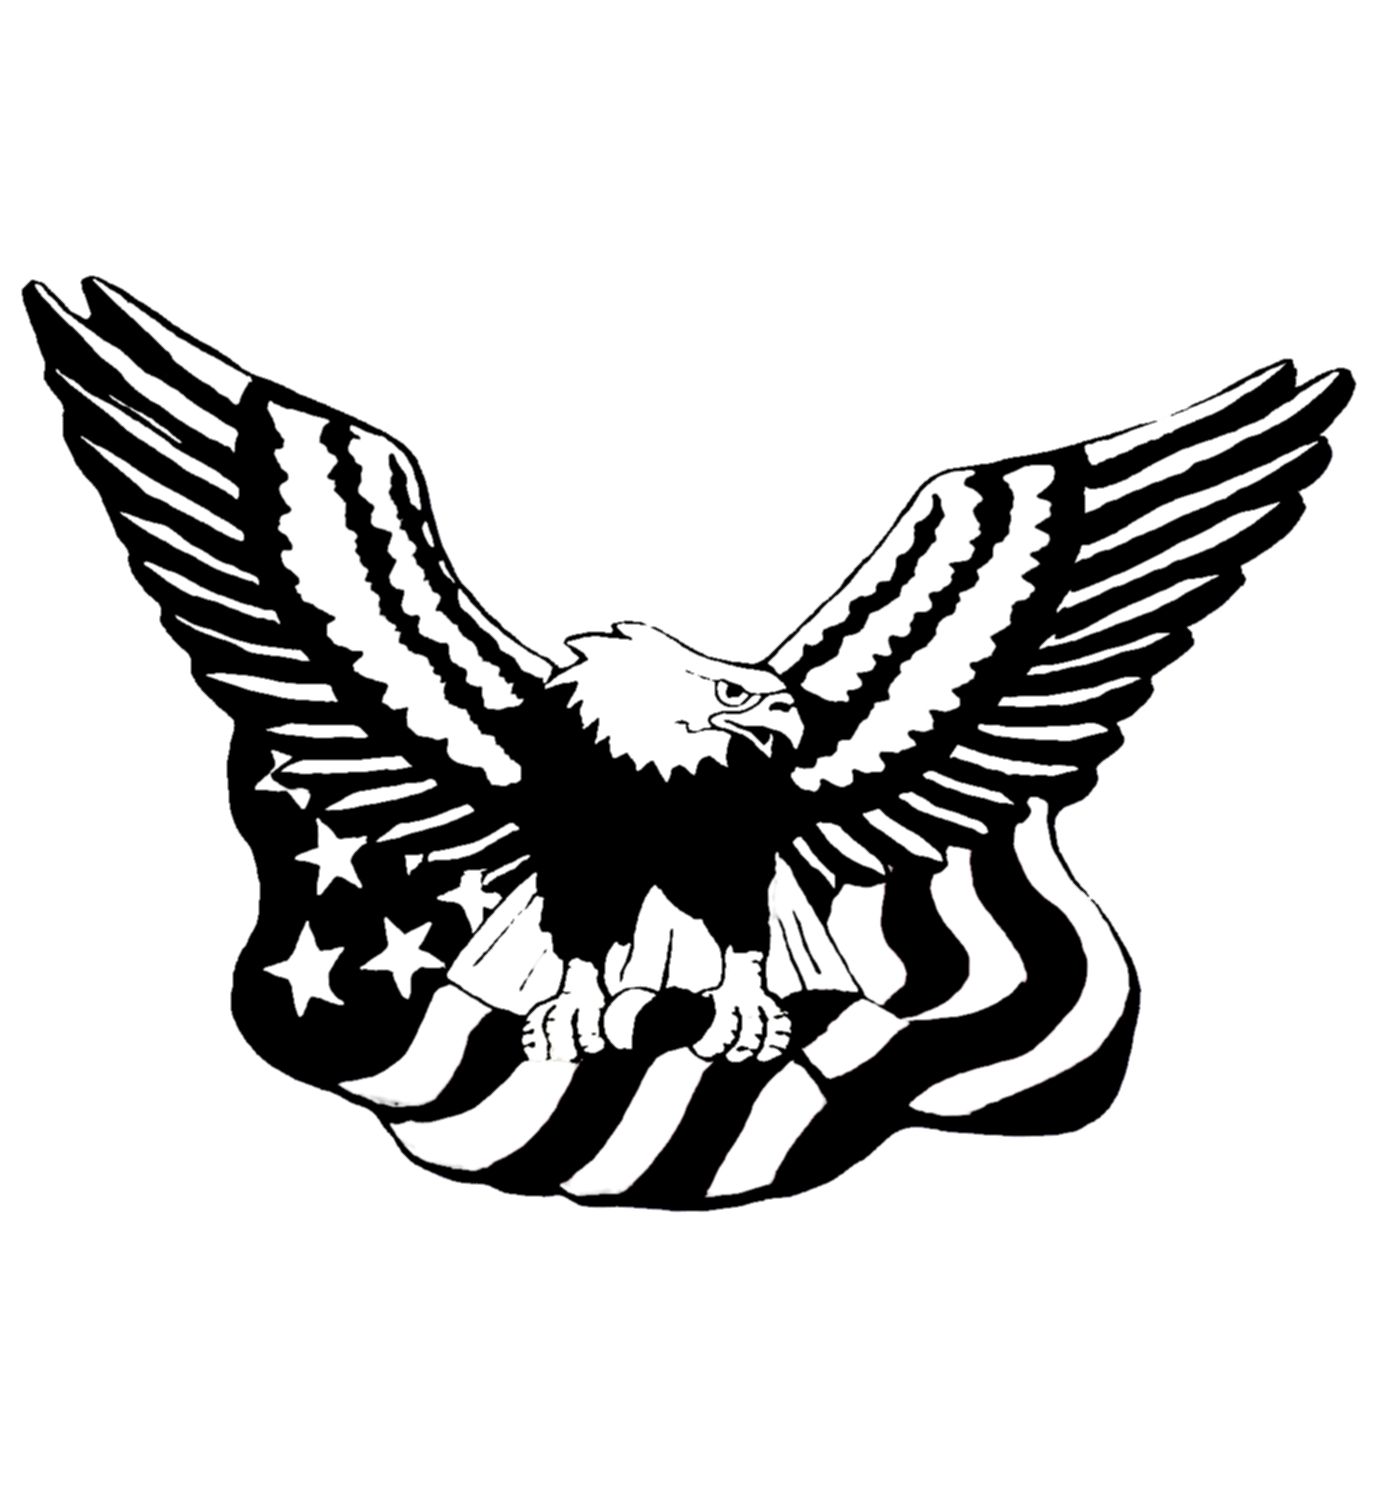 Eagle flag logo.